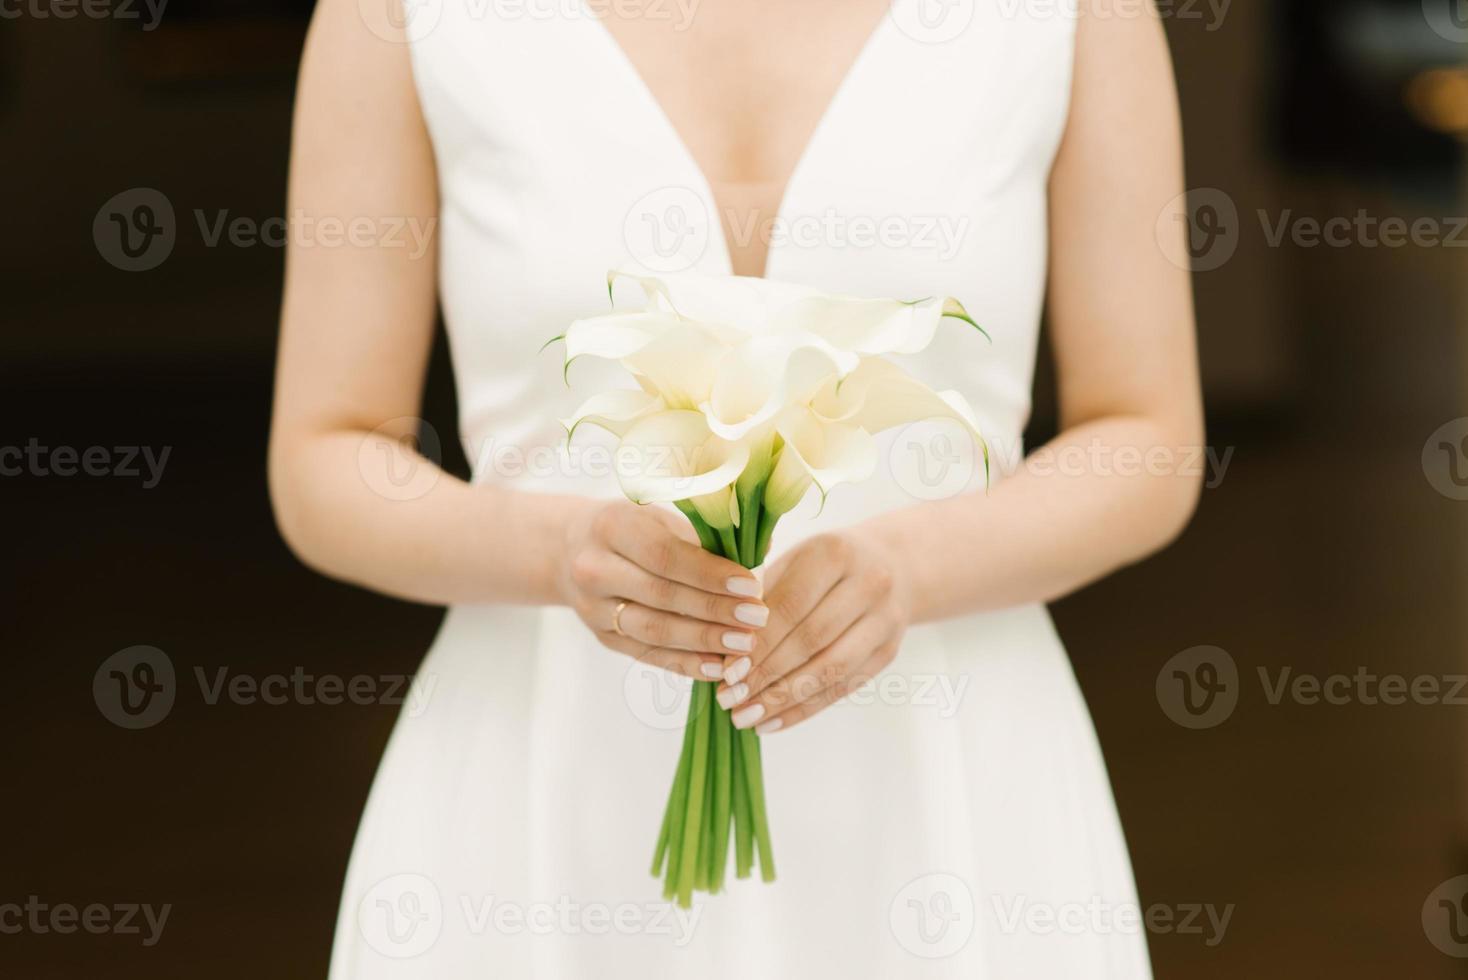 Zarter weißer Strauß Calla-Lilien in den Händen der Braut bei der Hochzeit foto